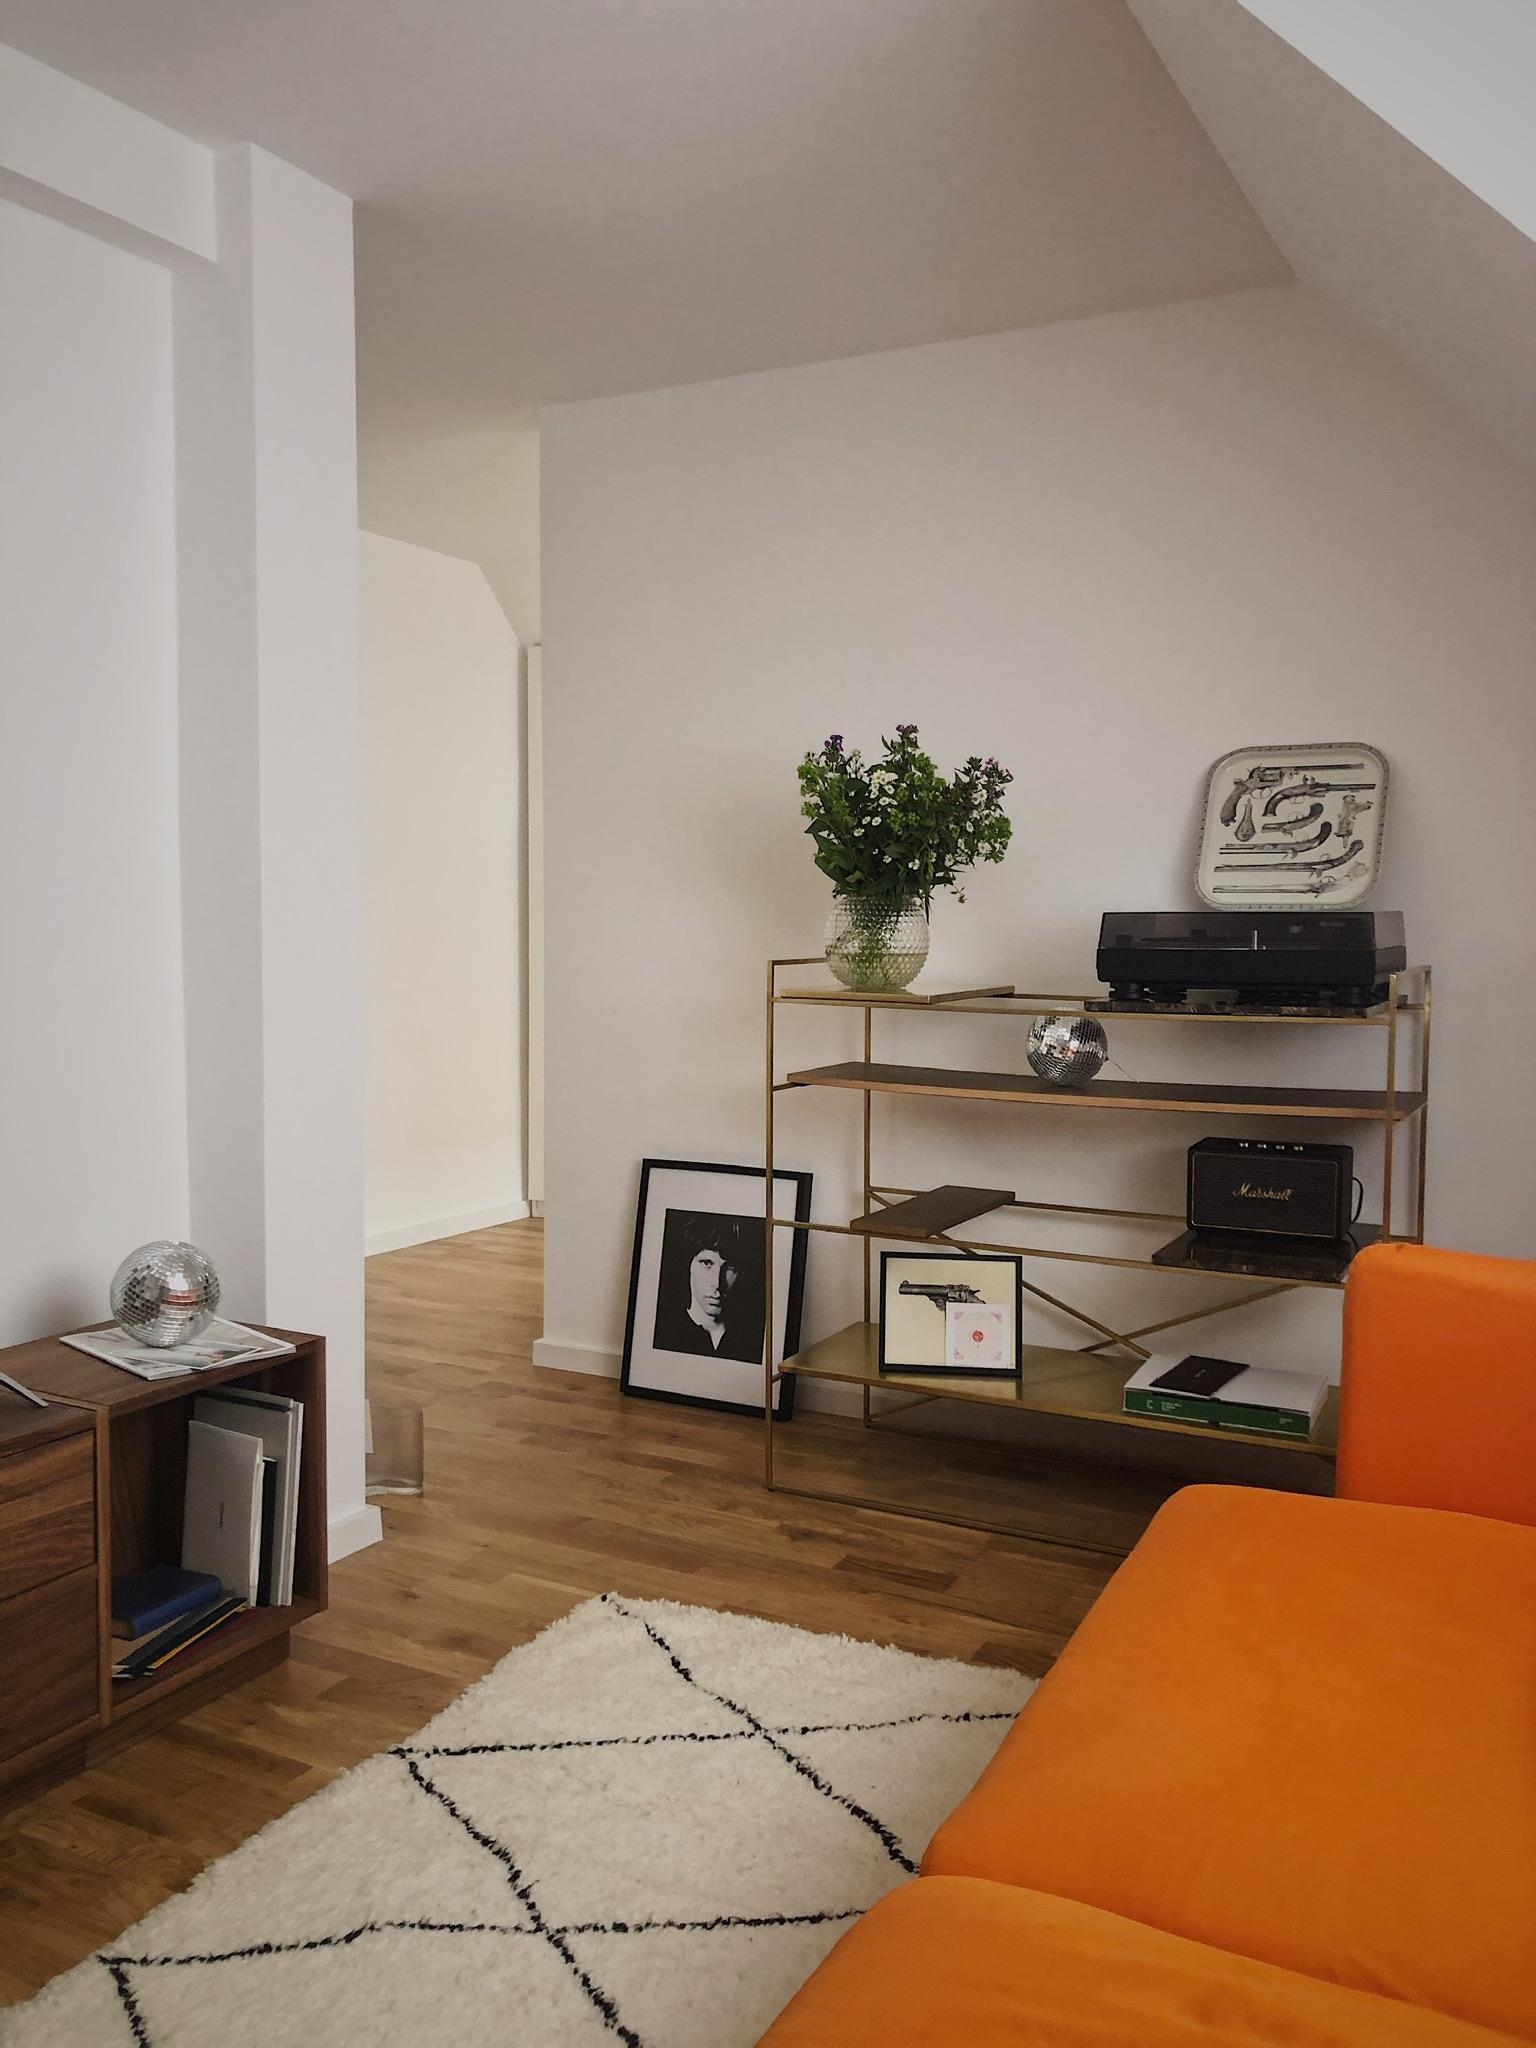 🧡🍊 
#home #space #apartment #munich #livingroom #interior #design #love #orangeisthenewblack #seventies #midcentury